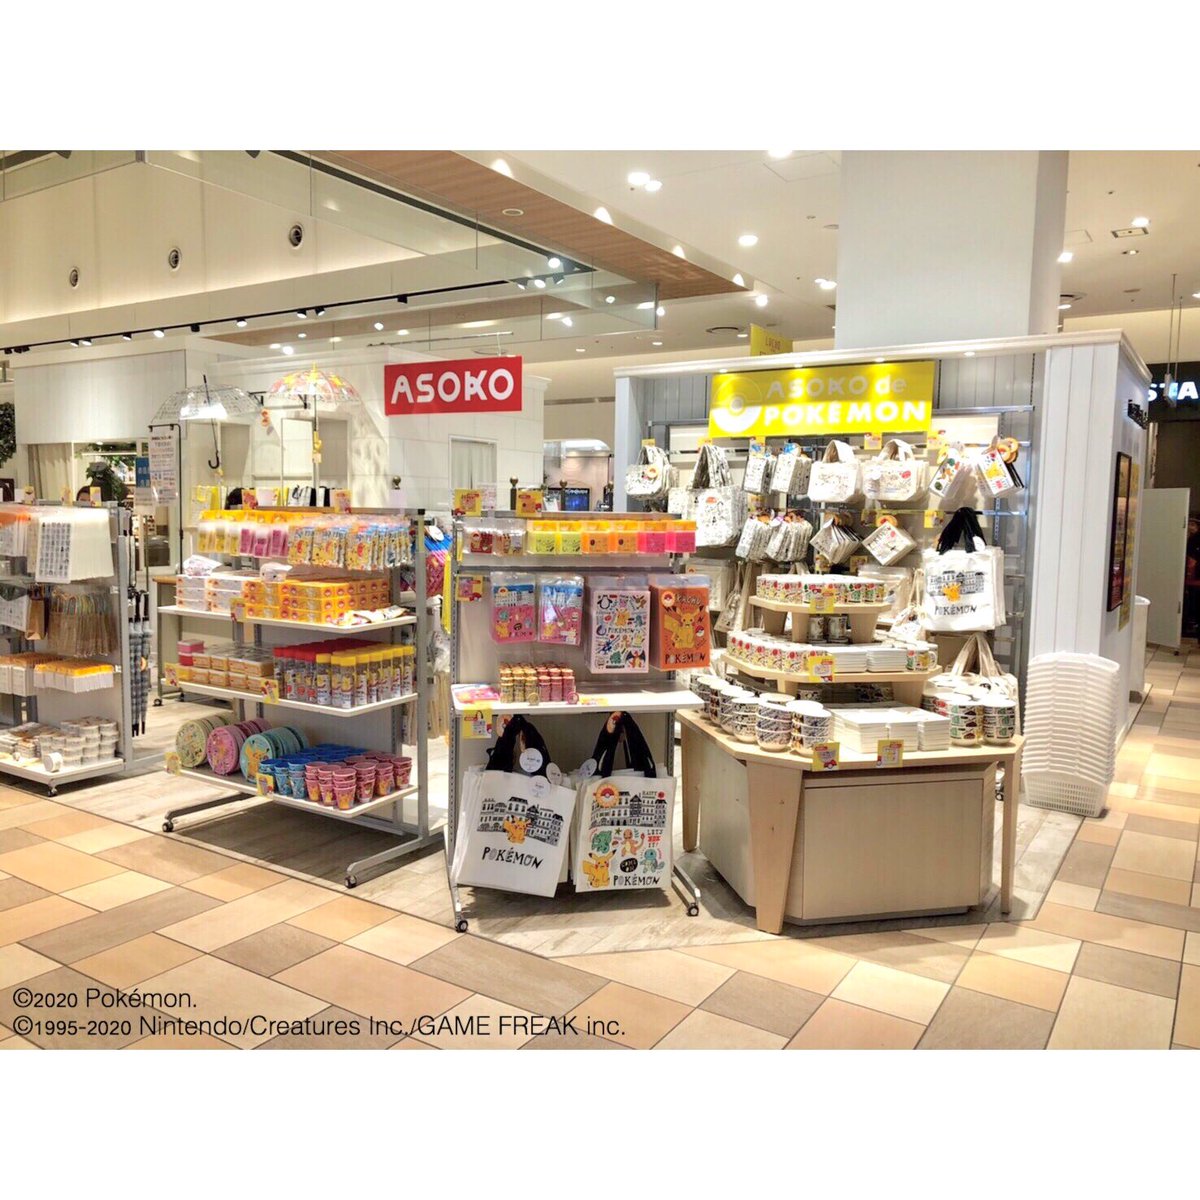 Asoko Zakka Store Asoko De ポケモン Popup Store Open 大阪の皆さま 梅田のルクアイーレ2階にて Popup Storeが本日からオープン 2 4までの期間限定となっておりますので 是非この機会にお買い求め下さいませ 大阪でポケモンゲットだぜ